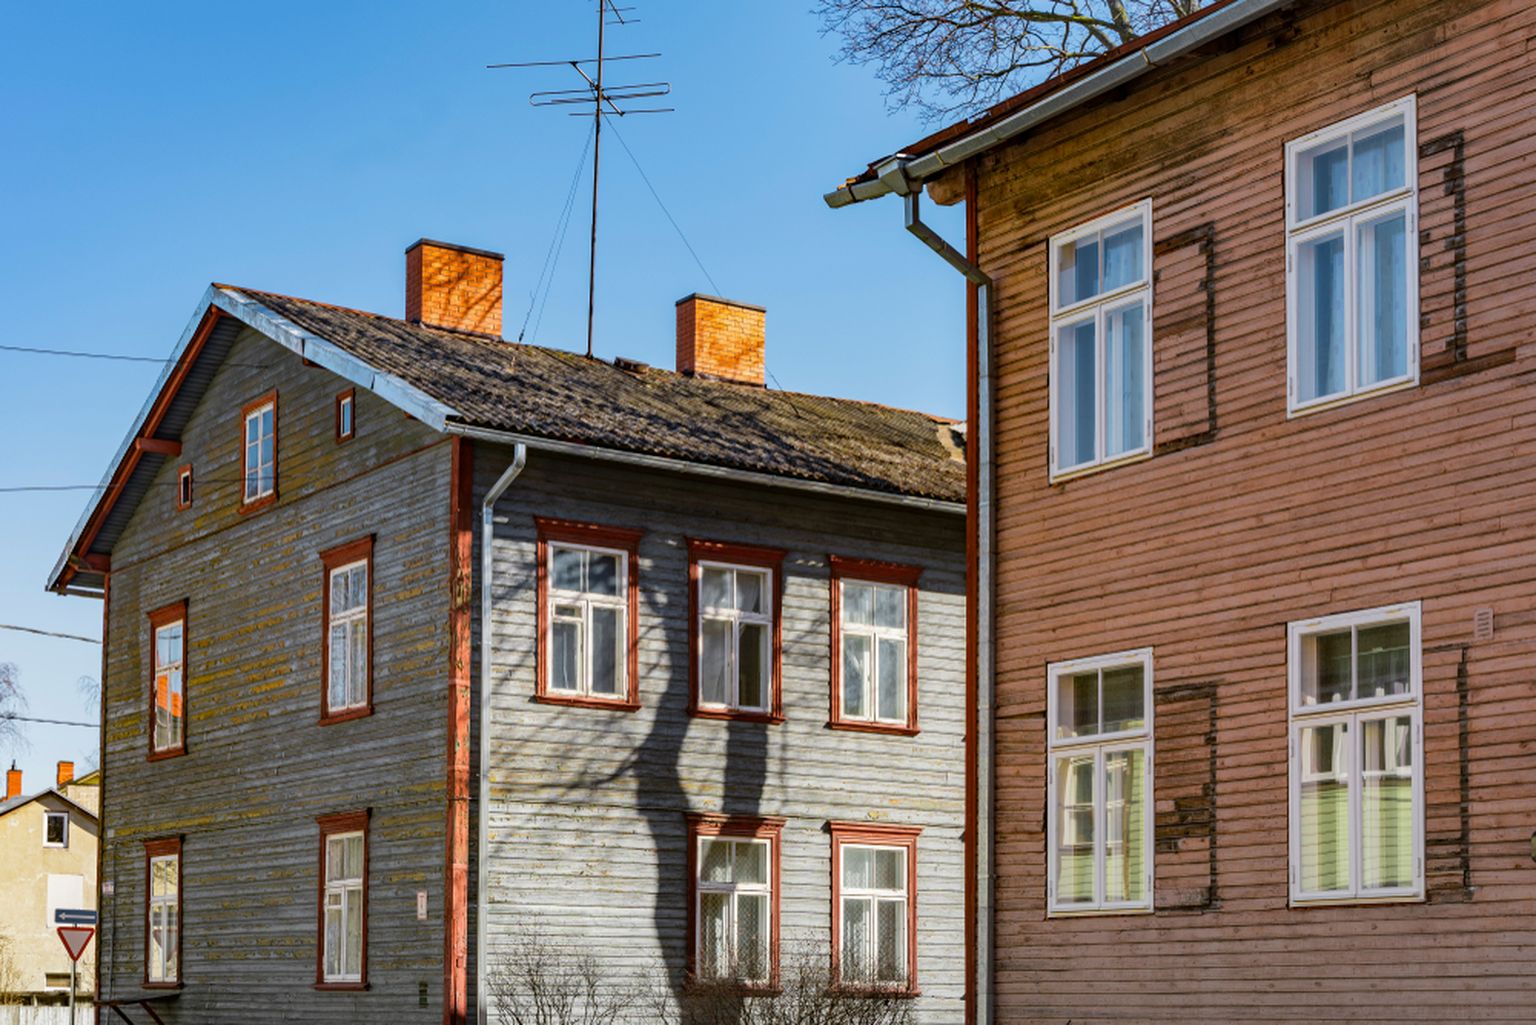 Swedbanki korteriühistute energiatõhususe laenu eesmärk on toetada võimalikult paljude Eesti kodude keskkonnasõbralikumaks renoveerimist. Energiatõhususe laenu saab kasutada korterelamu tervikrenoveerimiseks, mille hulka kuulub  kogu hoone soojustamine, tehnosüsteemide uuendamine, akende ja uste vahetamine ning soovi korral ka päikesepaneelide paigaldamine.